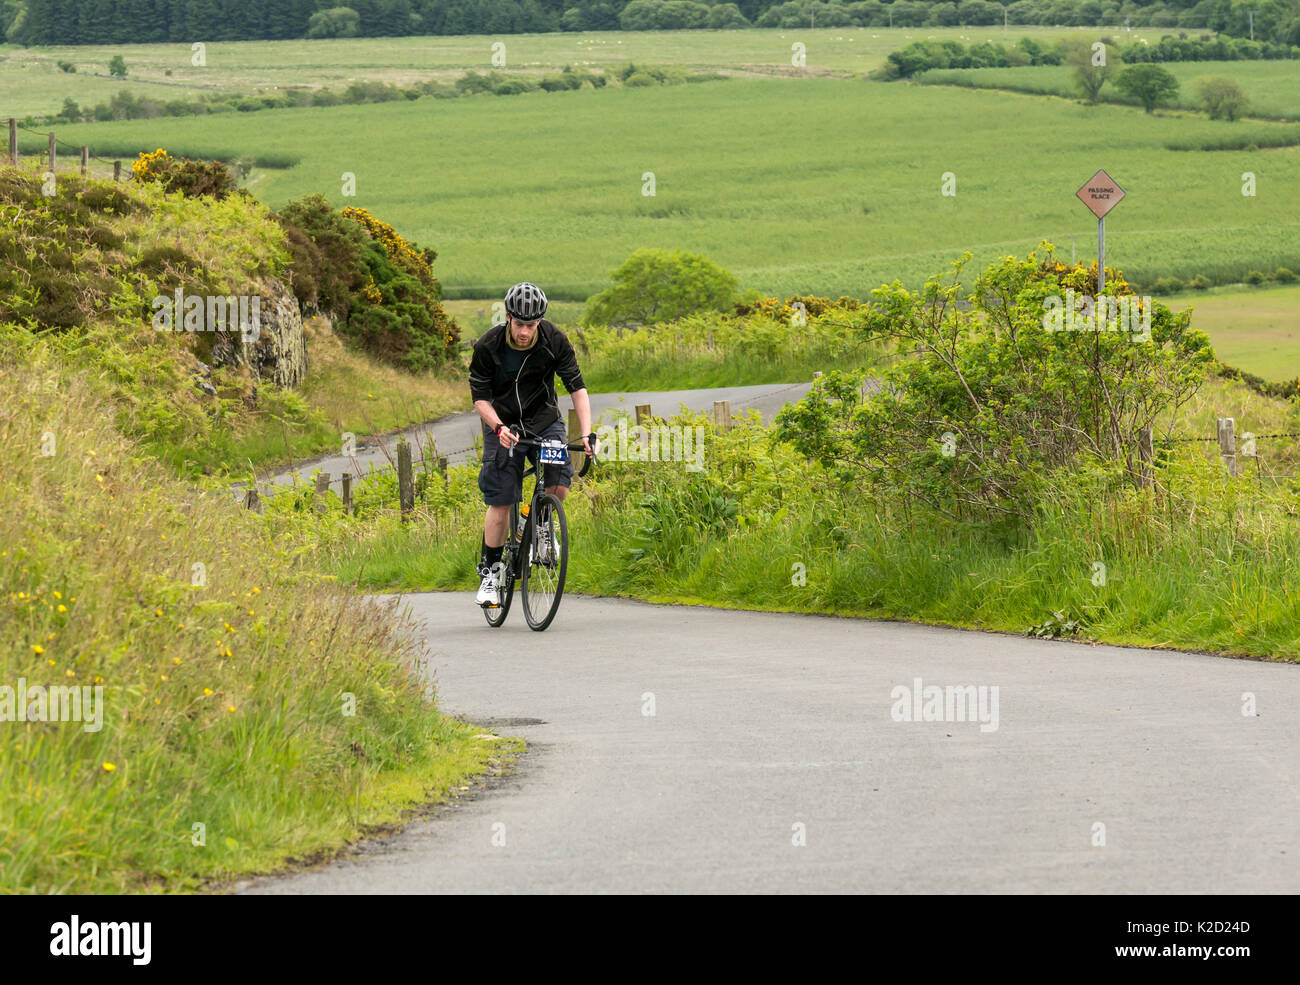 Junger Mann auf dem Fahrrad Radfahren bis Dreva Hill, Zyklus recht Schottland Skinny Tweed 2017 Radfahren Veranstaltung, Peebles, Scottish Borders, Schottland, Großbritannien Stockfoto